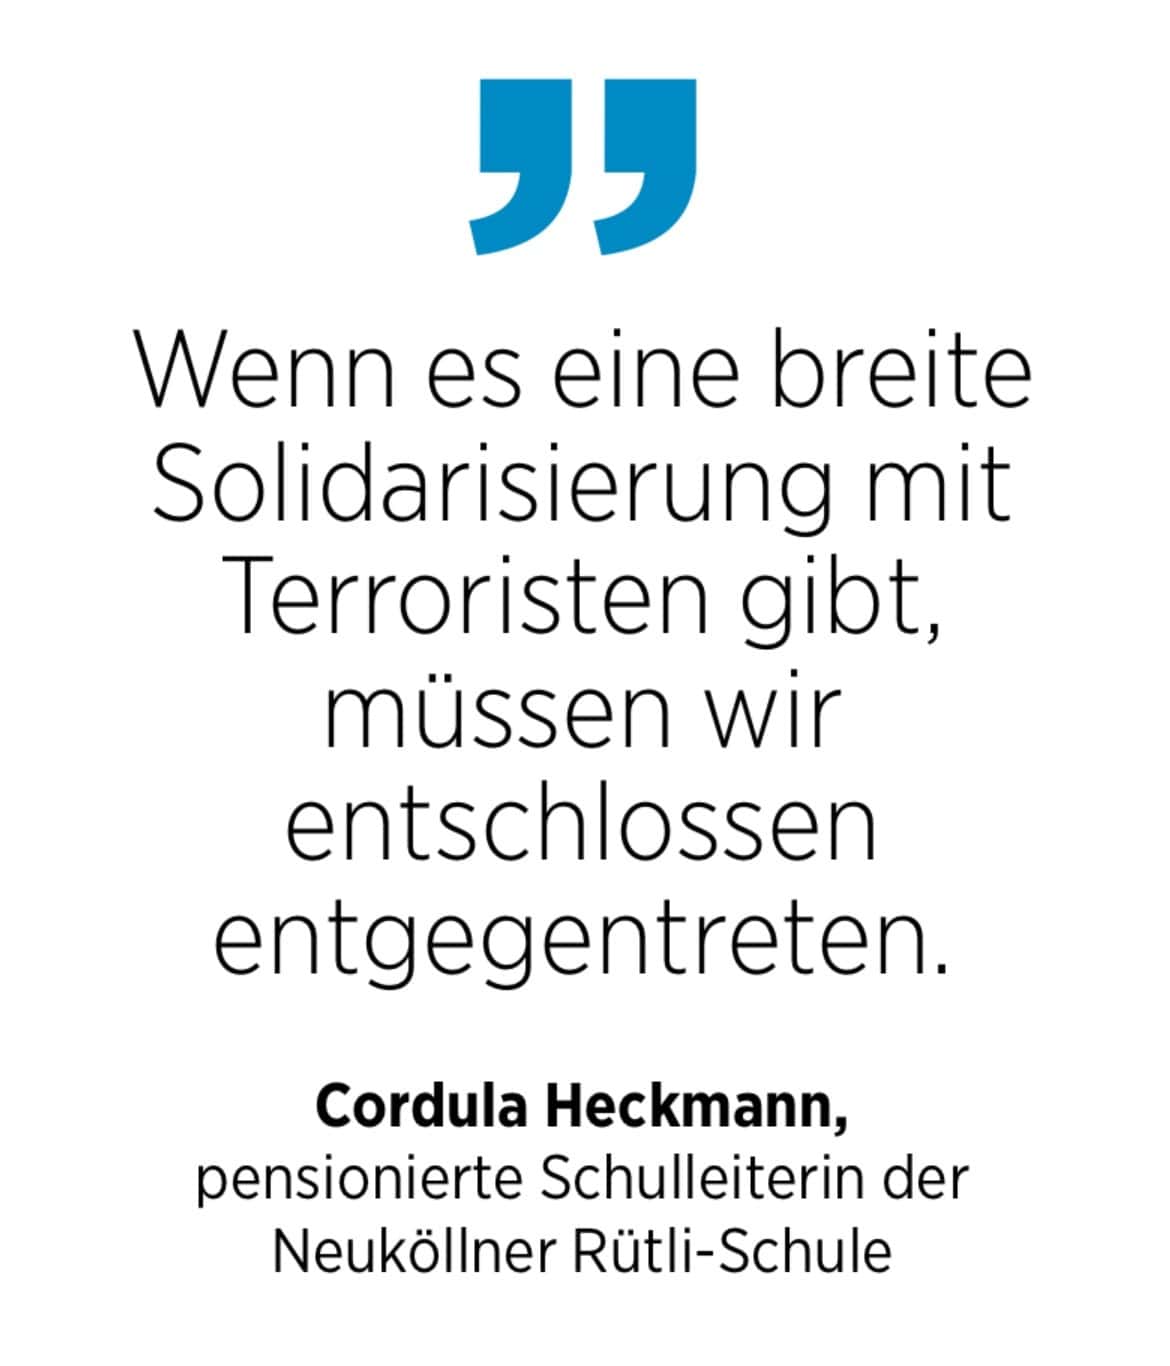 Cordula Heckmann, pensionierte Schulleiterin der Neuköllner Rütli-Schule: Wenn es eine breite Solidarisierung mit Terroristen gibt, müssen wir entschlossen entgegentreten.